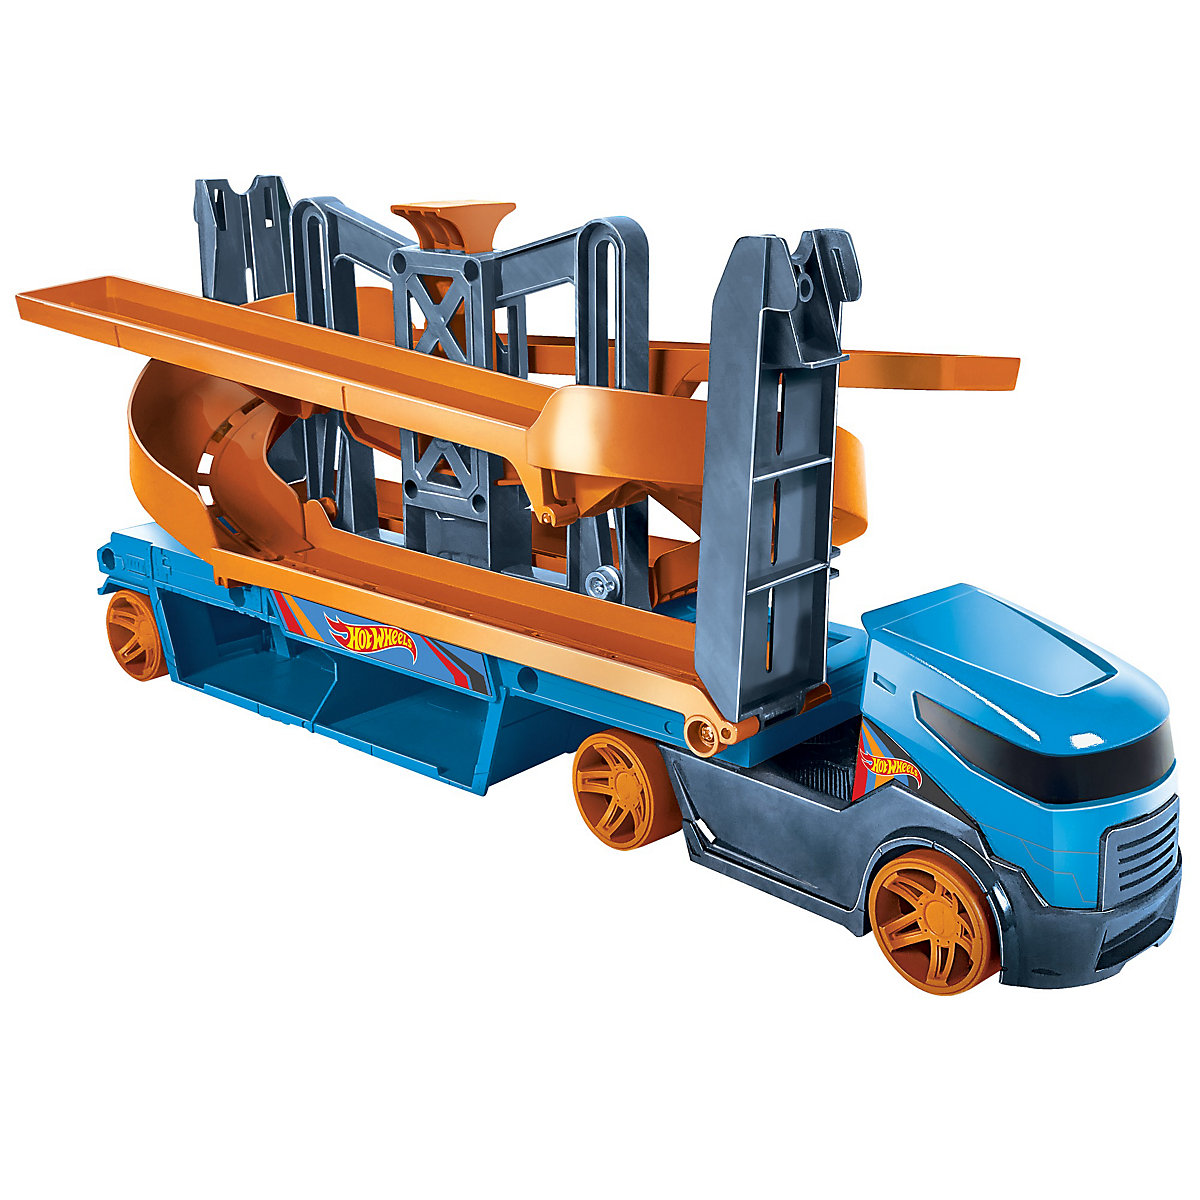 Hot Wheels Mega Action Transporter für 20 1:64 Spielzeugautos inkl. 1 Spielauto